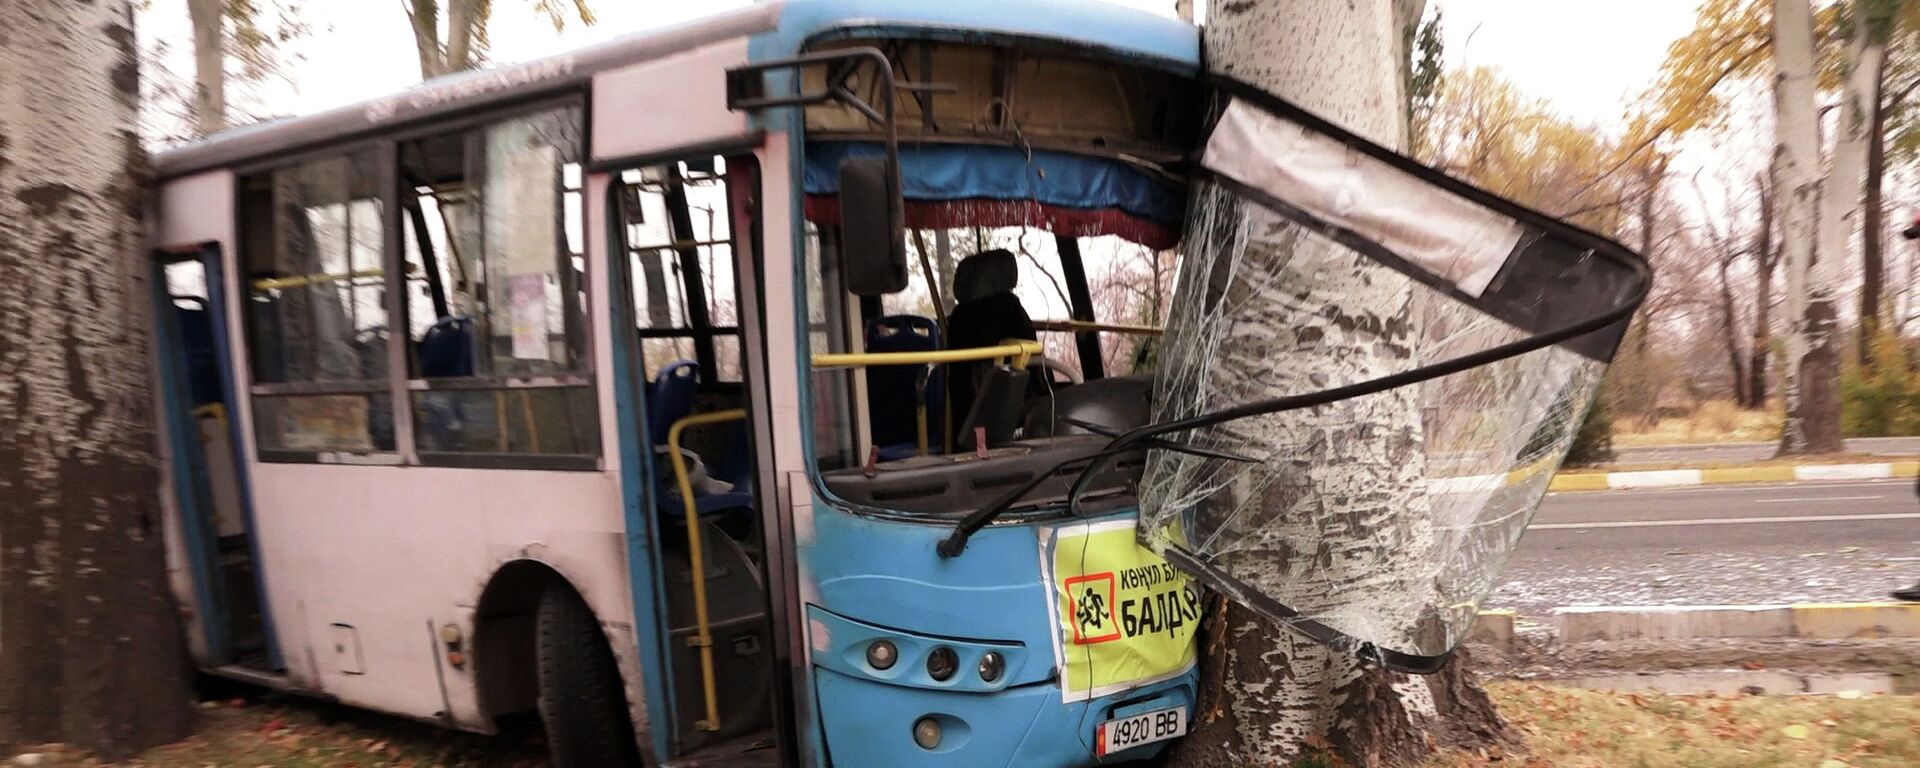 В ДТП с автобусом пострадали более 20 бишкекчан — видео о жесткой аварии - Sputnik Кыргызстан, 1920, 29.10.2021